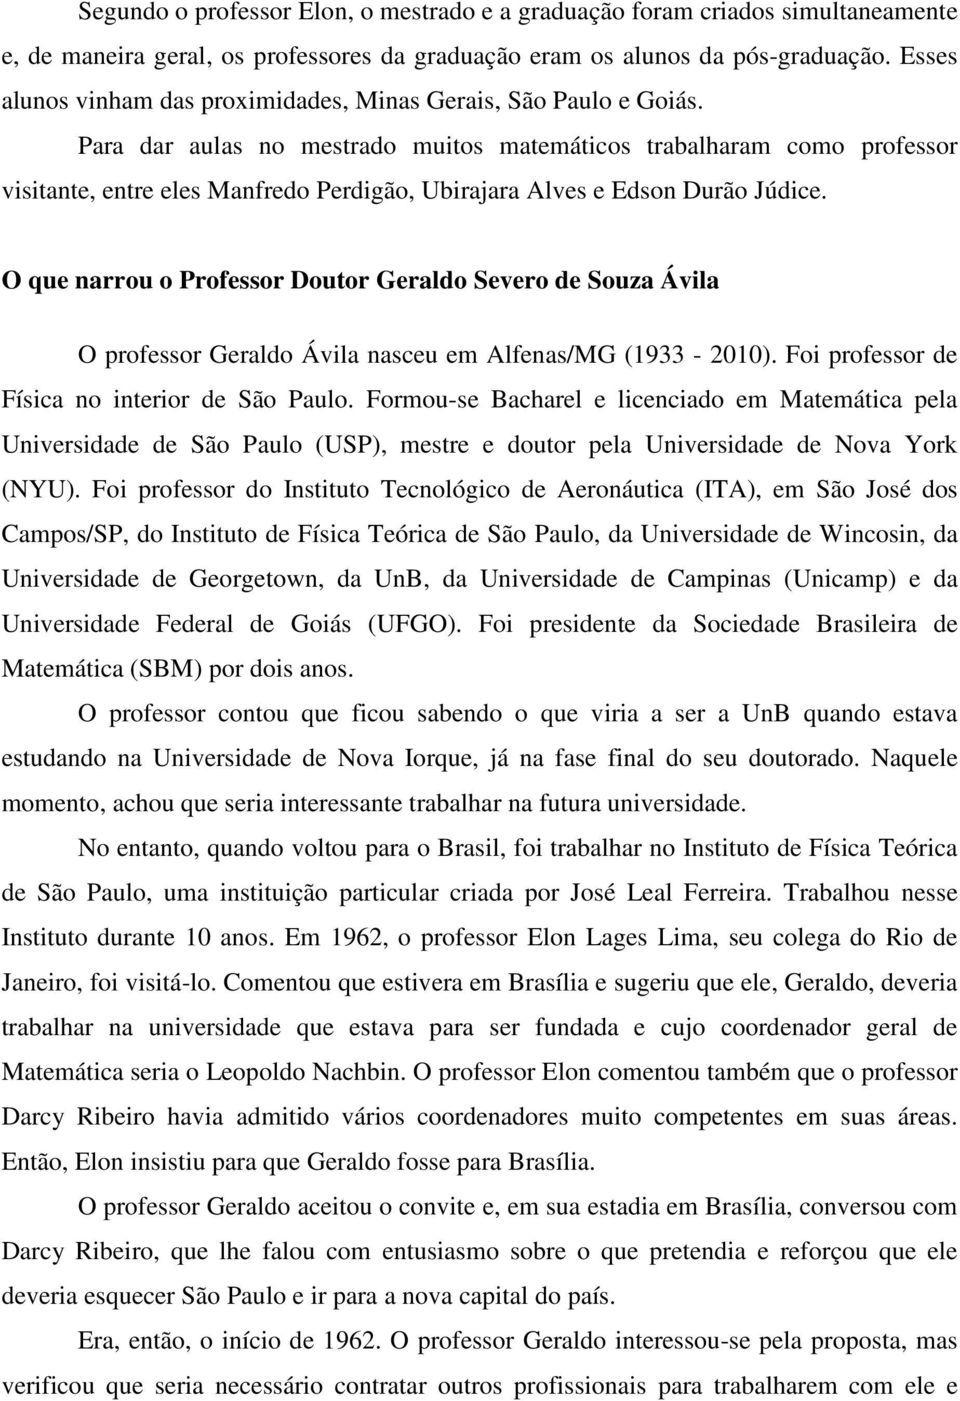 Para dar aulas no mestrado muitos matemáticos trabalharam como professor visitante, entre eles Manfredo Perdigão, Ubirajara Alves e Edson Durão Júdice.